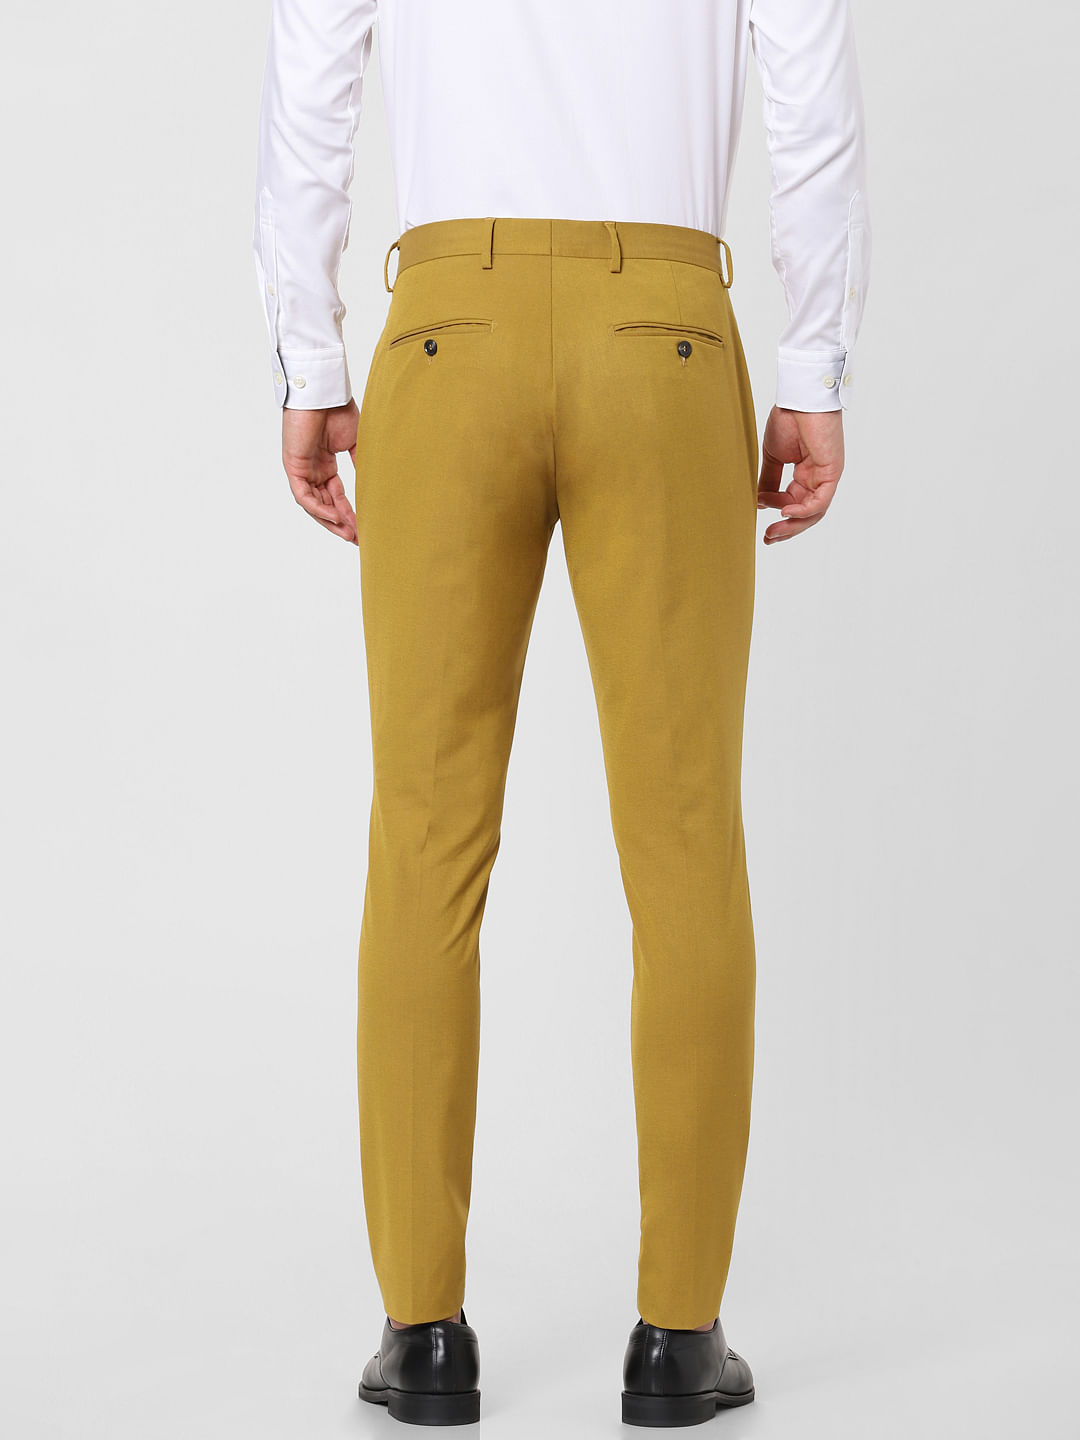 Striped Mustard Pants - LINDA TENCHI TRAN